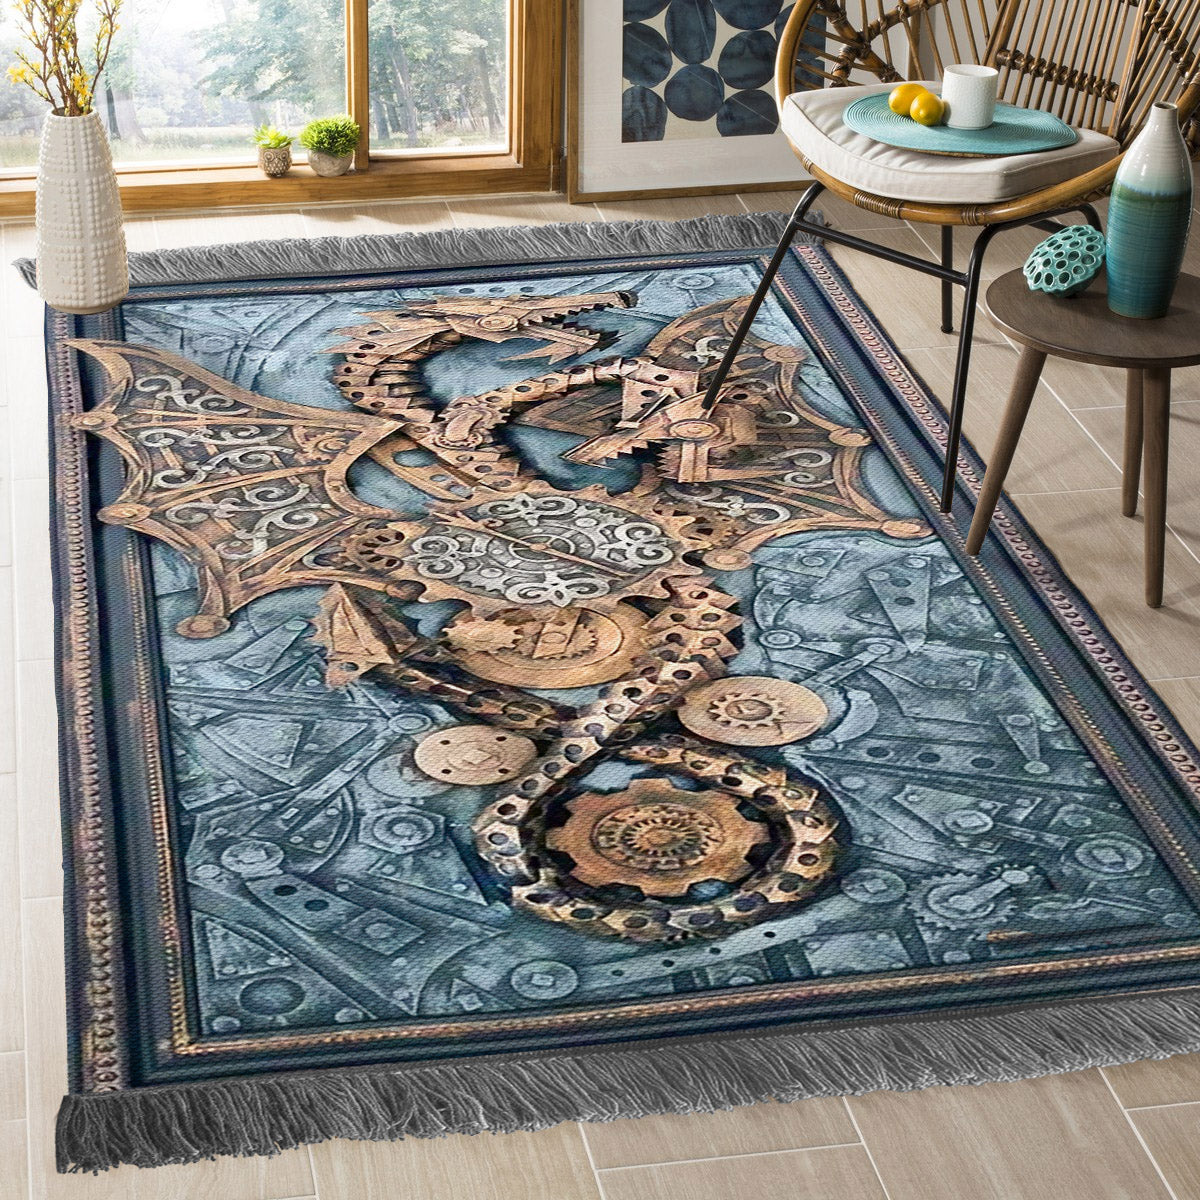 Steampunk Dragon BT2709173O Decorative Floor-cloth